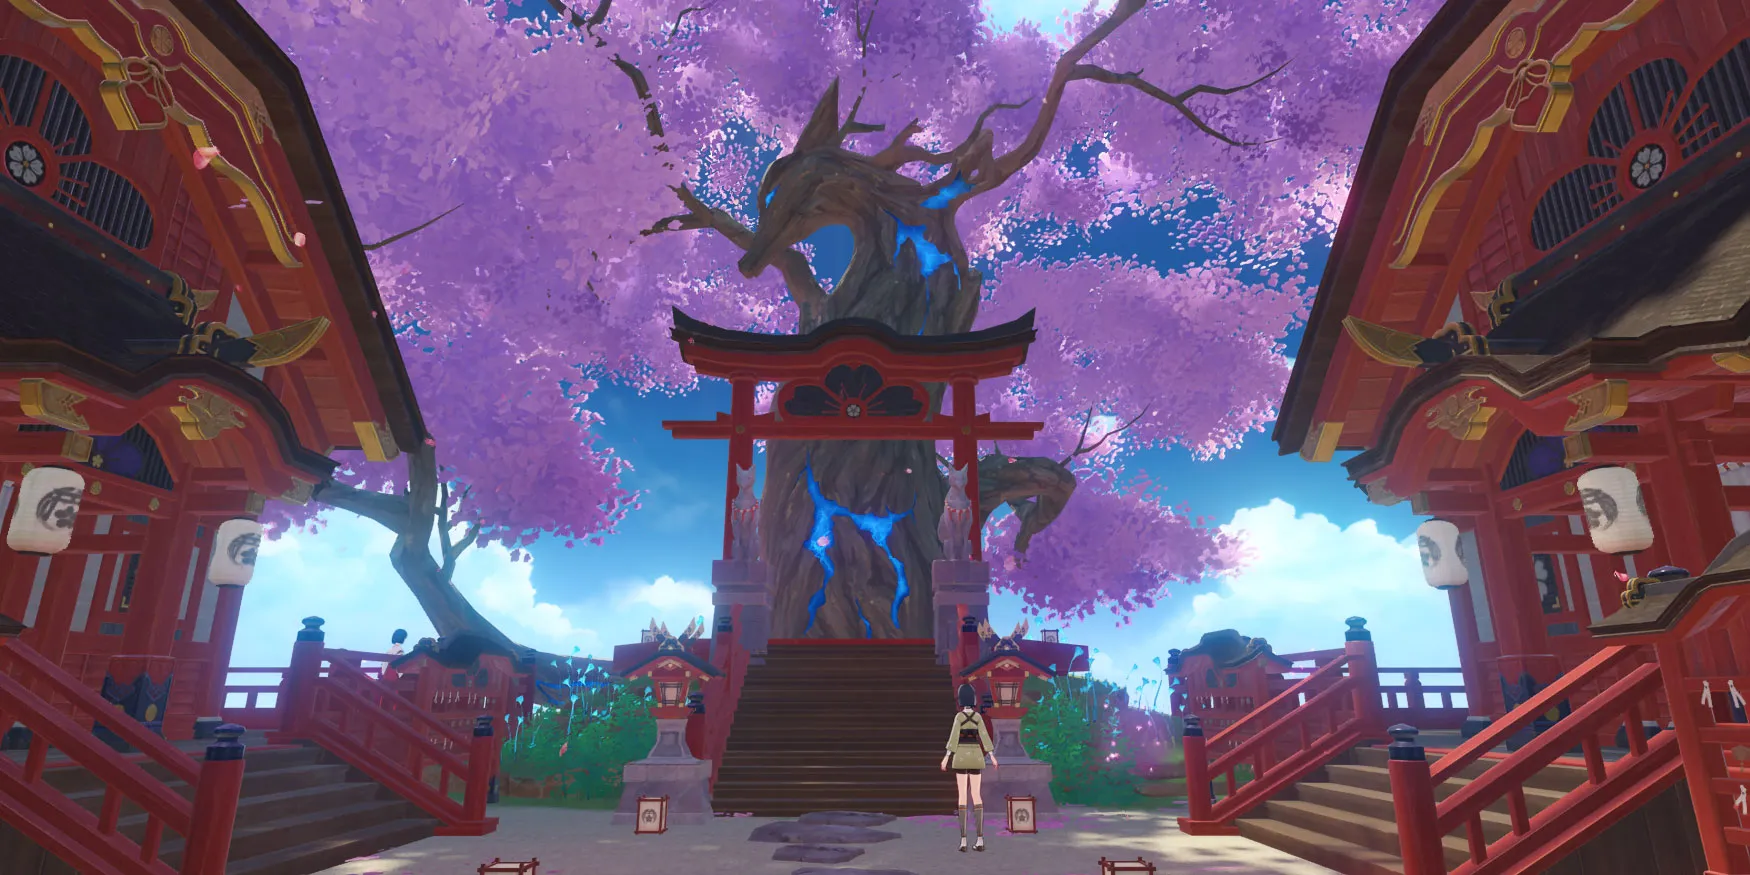 La Sacra Sakura di Inazuma, un albero a forma di volpe, in Genshin Impact.